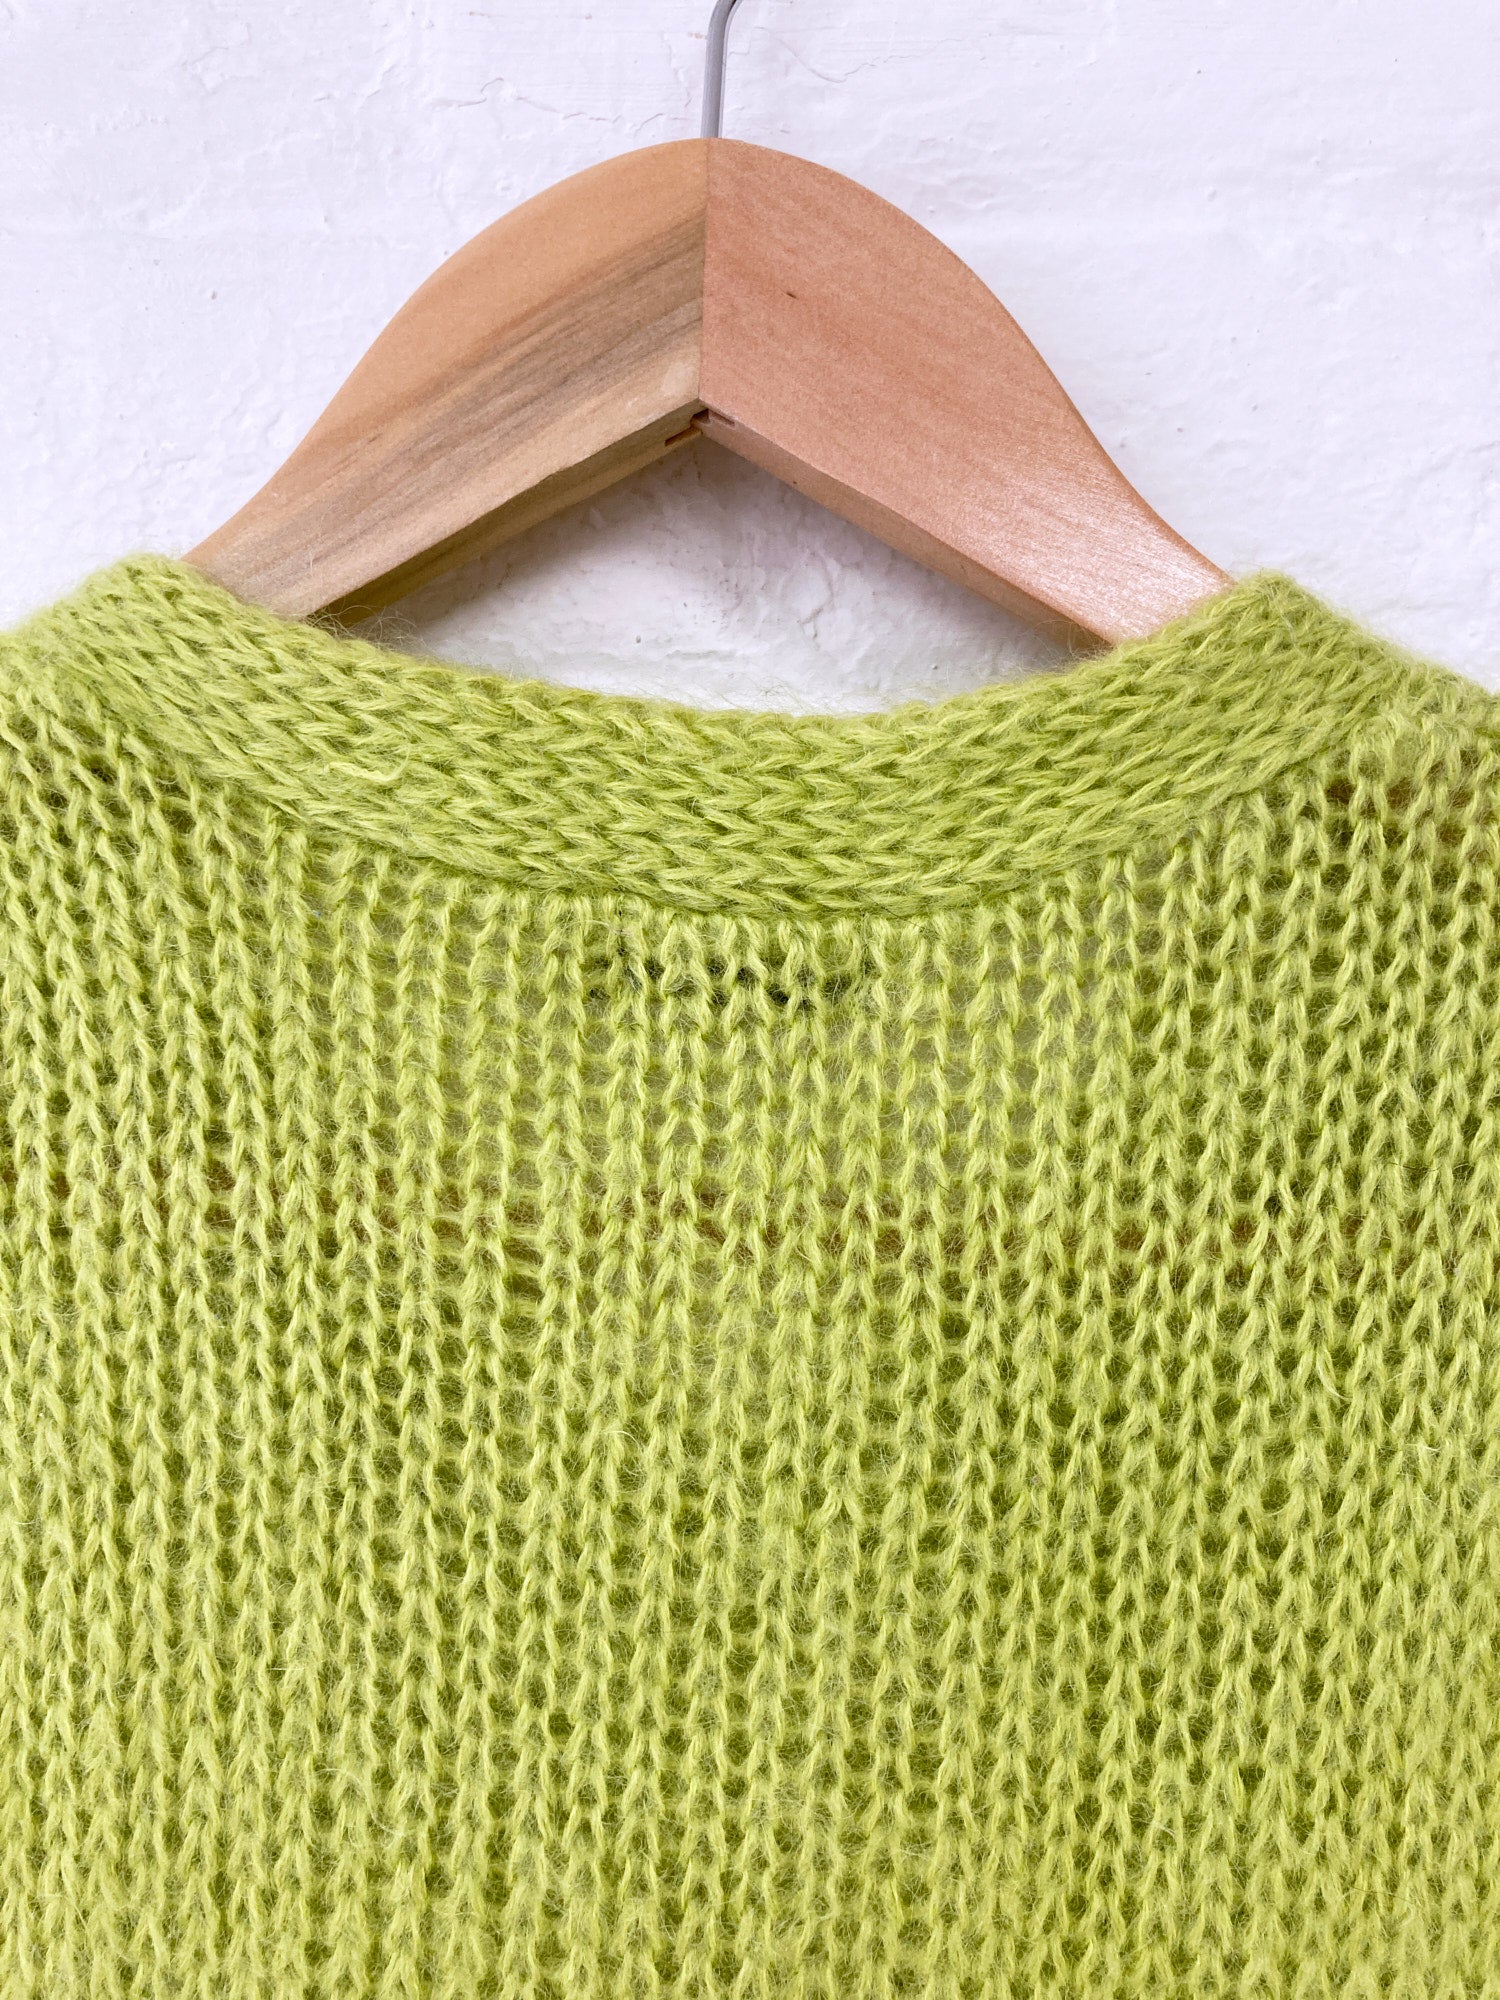 Comme des Garcons Homme Plus 1999 pistachio green mohair knitted vest